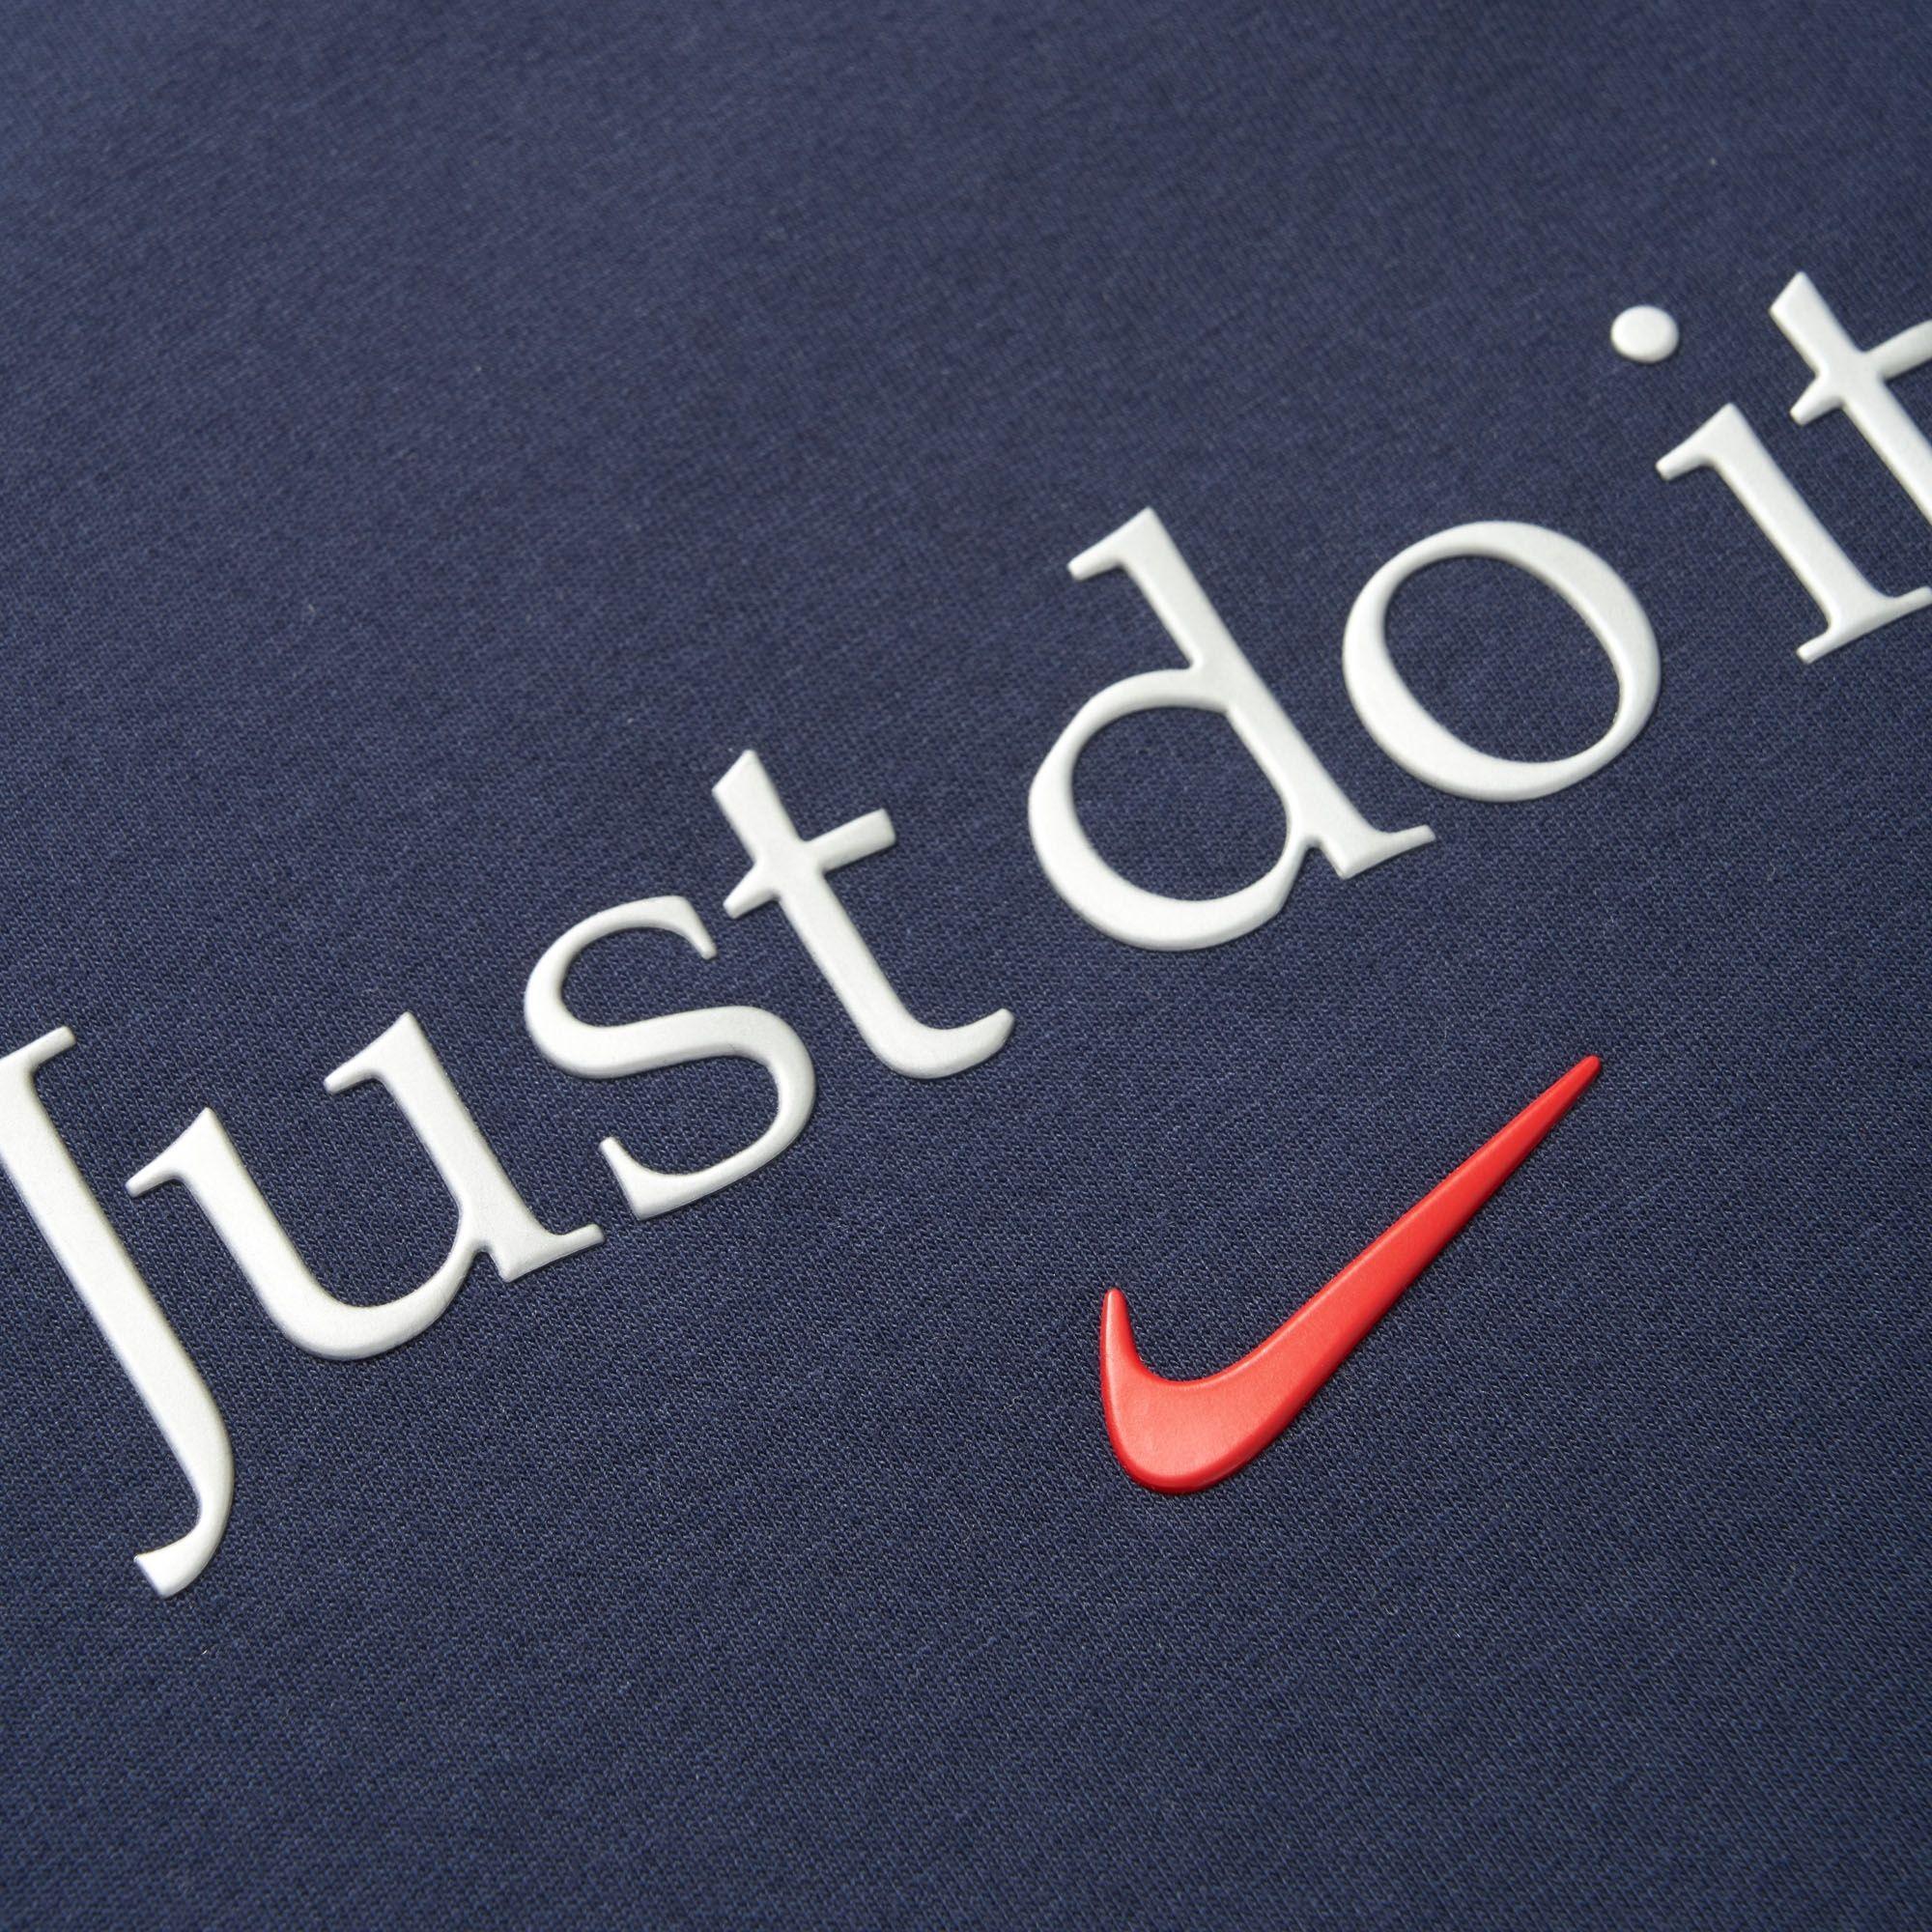 Nike Just Do It Logo - Nike Just Do It Logo T Shirt. Navy. AA6578 451